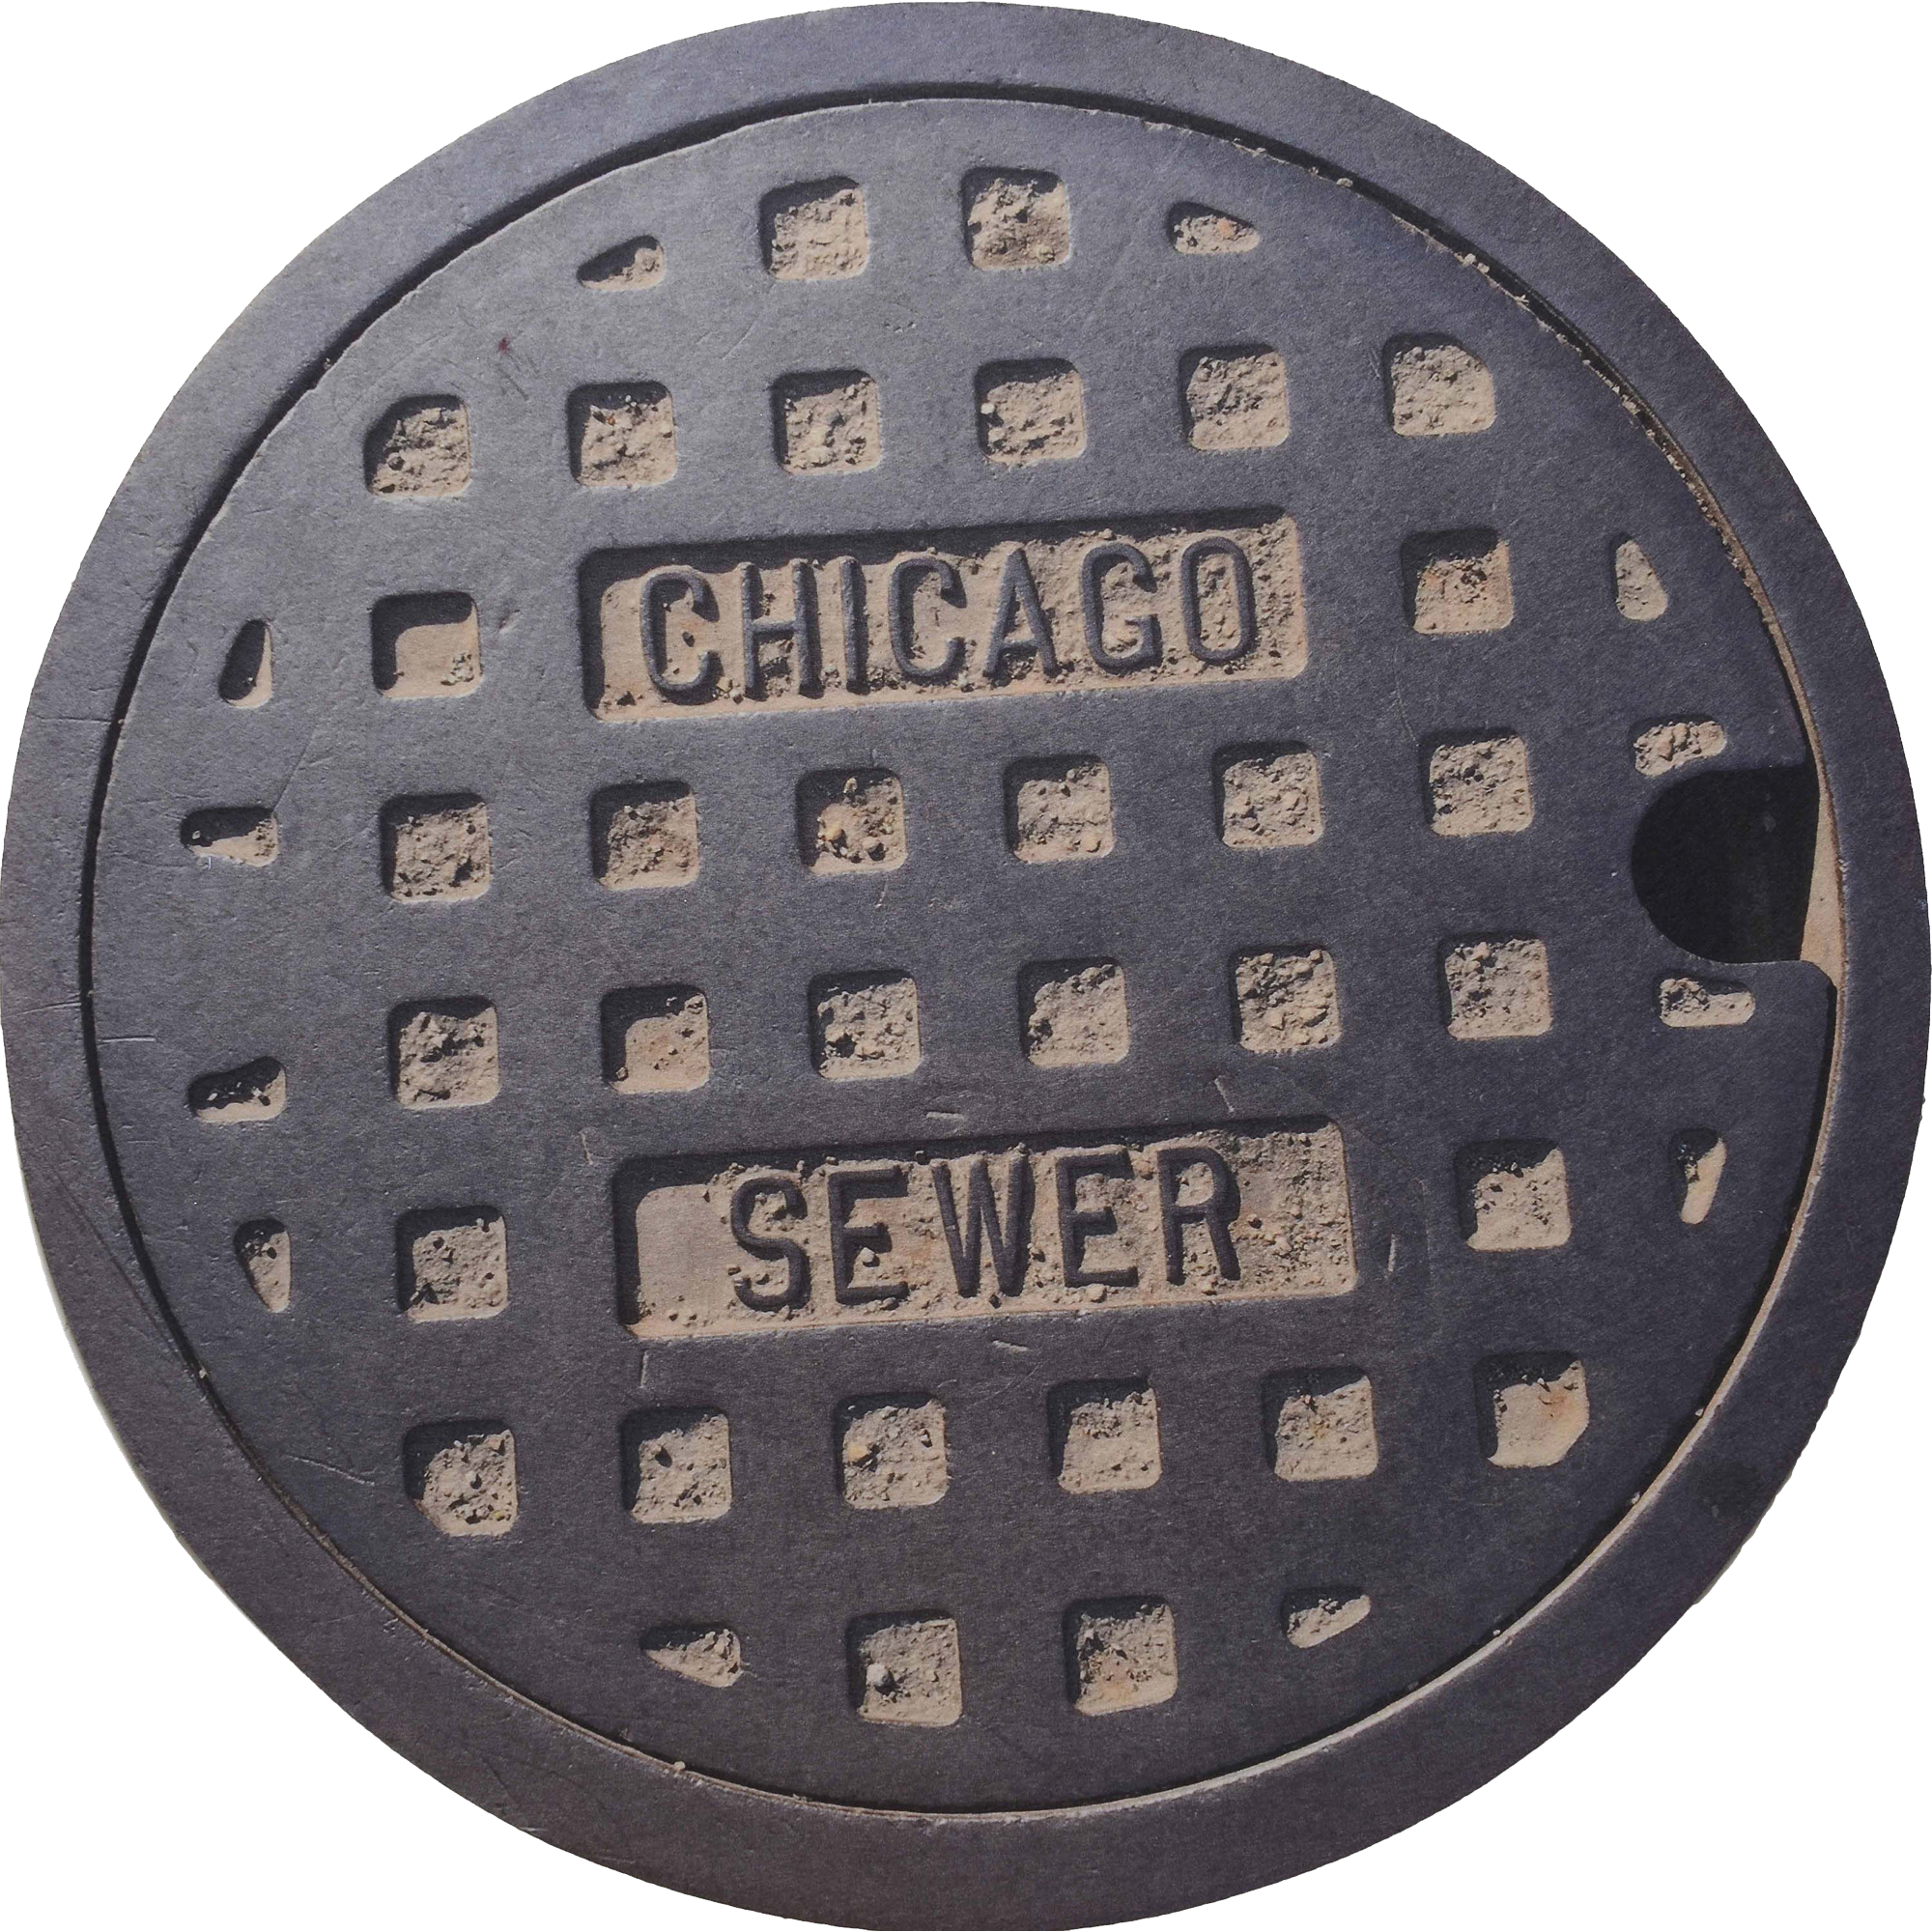 Manhole Cover  Transparent Image